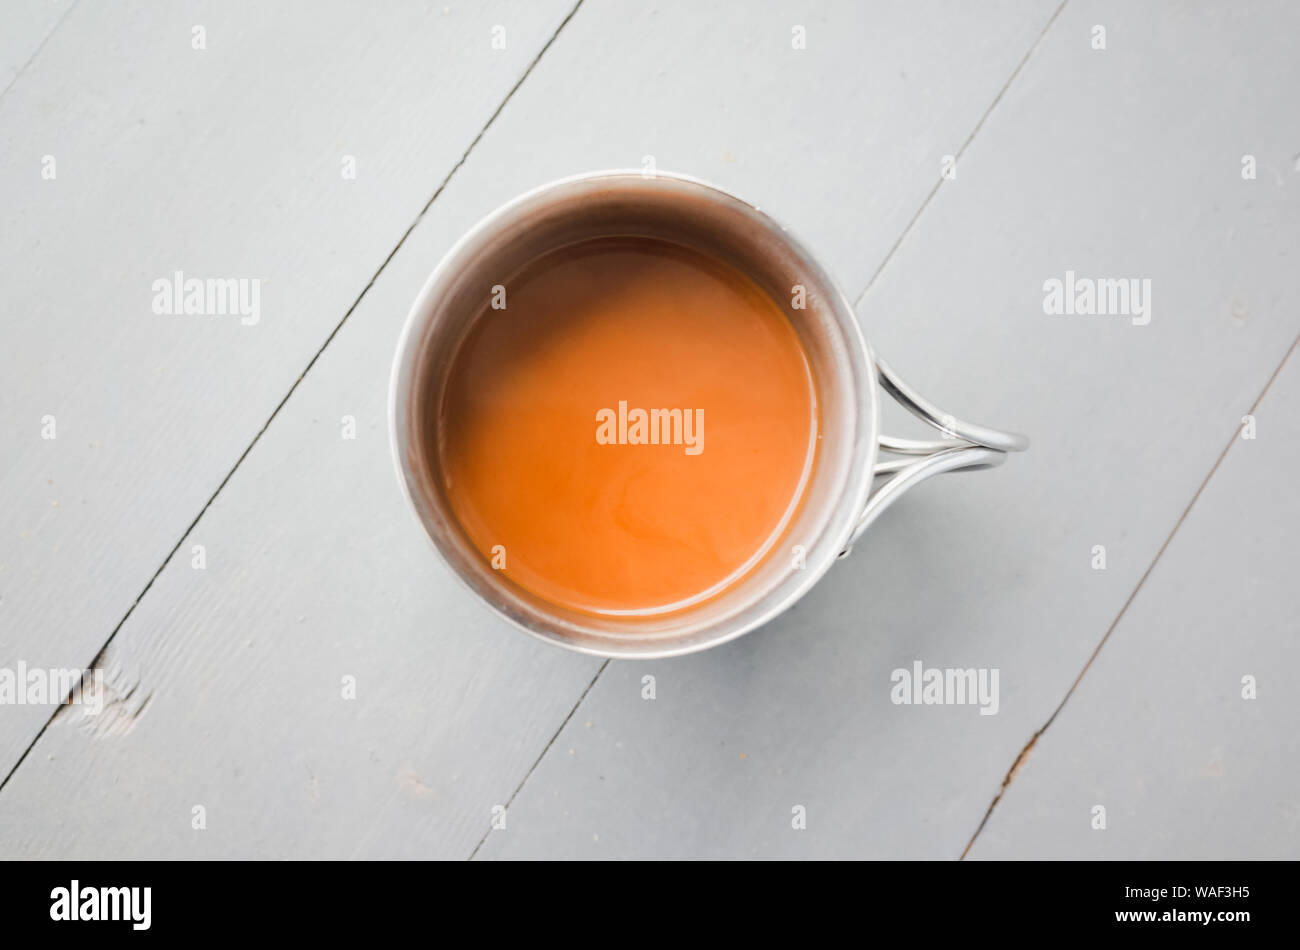 Edelstahl Becher Kaffee mit Milch steht auf einem weißen Holztisch, closeup Draufsicht Foto mit selektiven Fokus Stockfoto